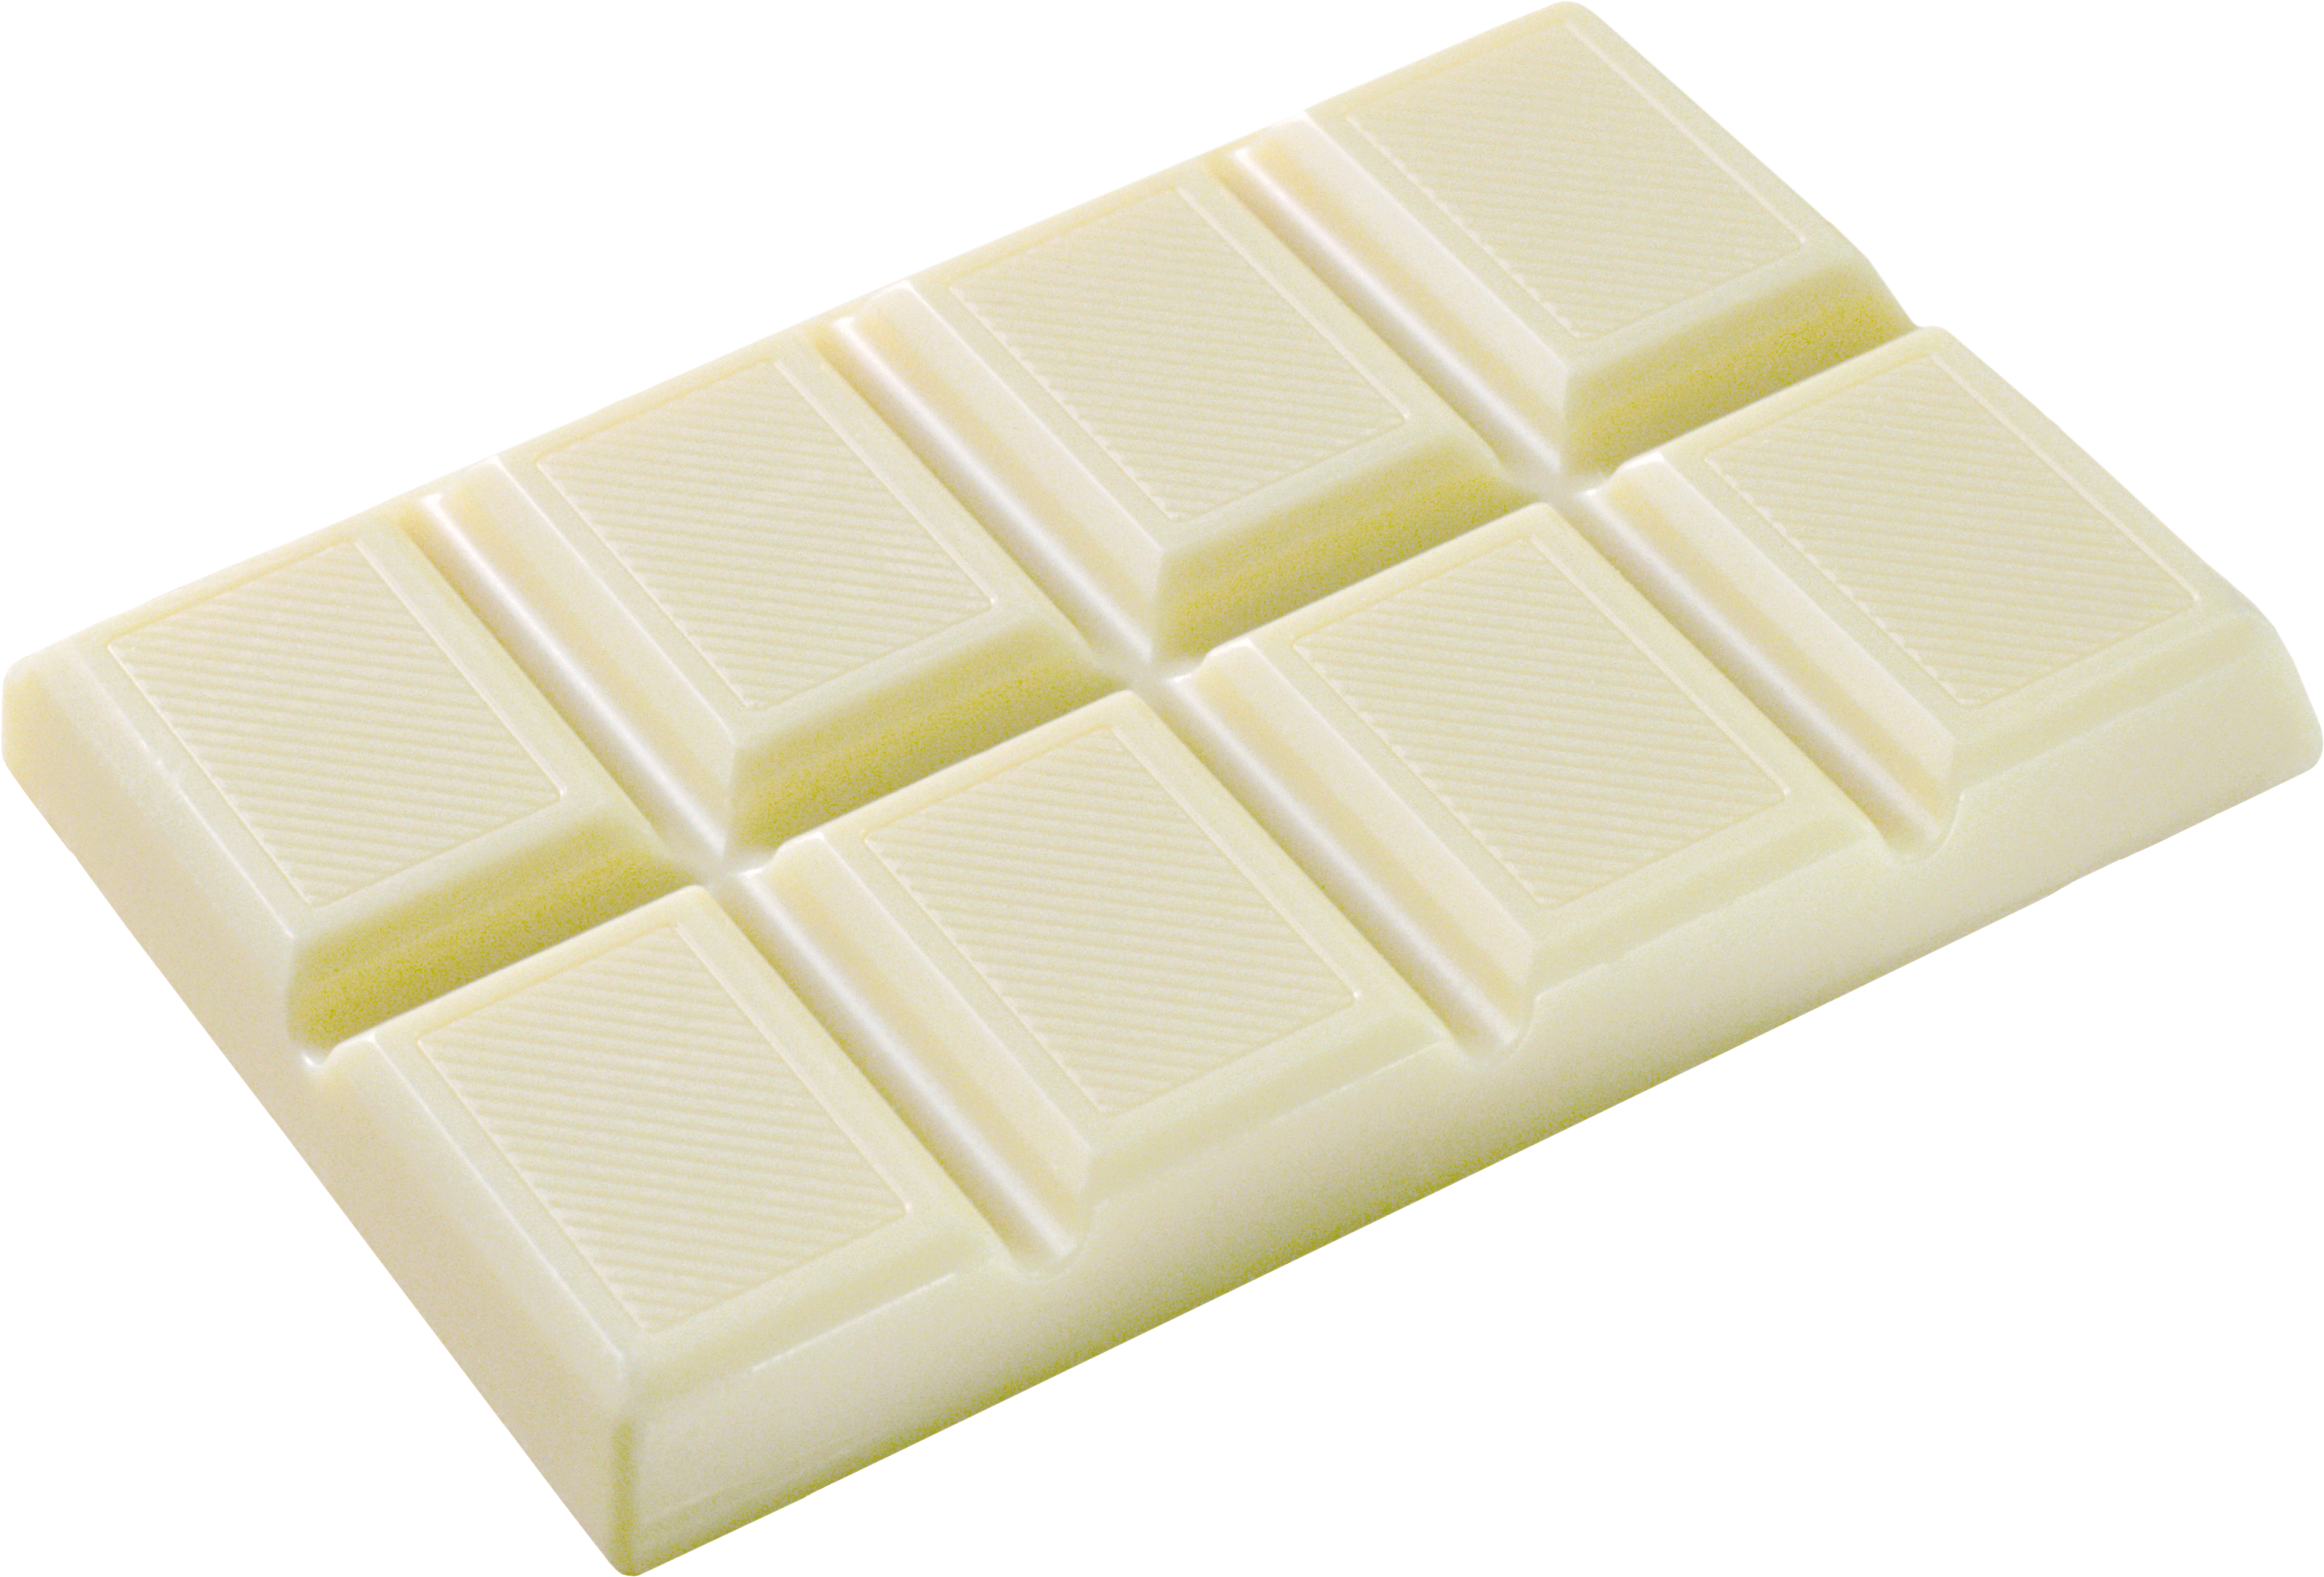 Cioccolato bianco